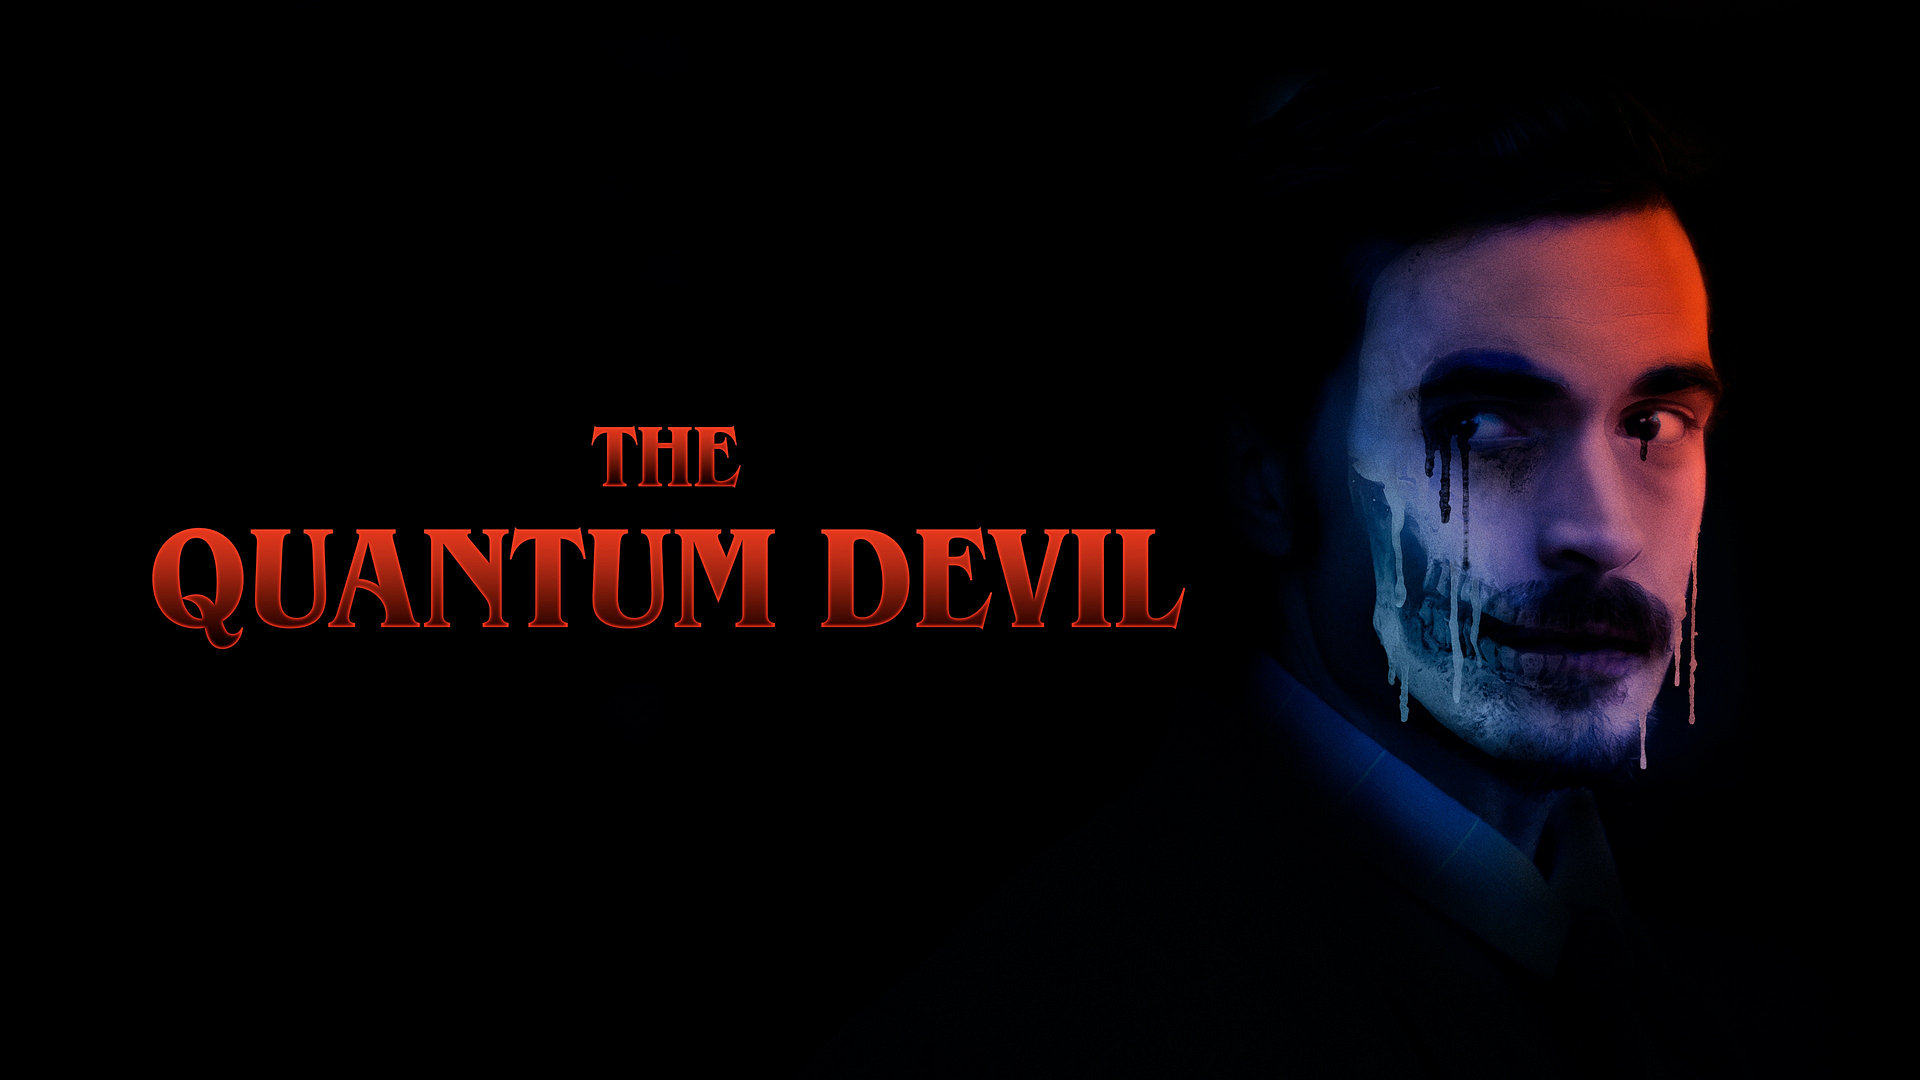 The Quantum Devil